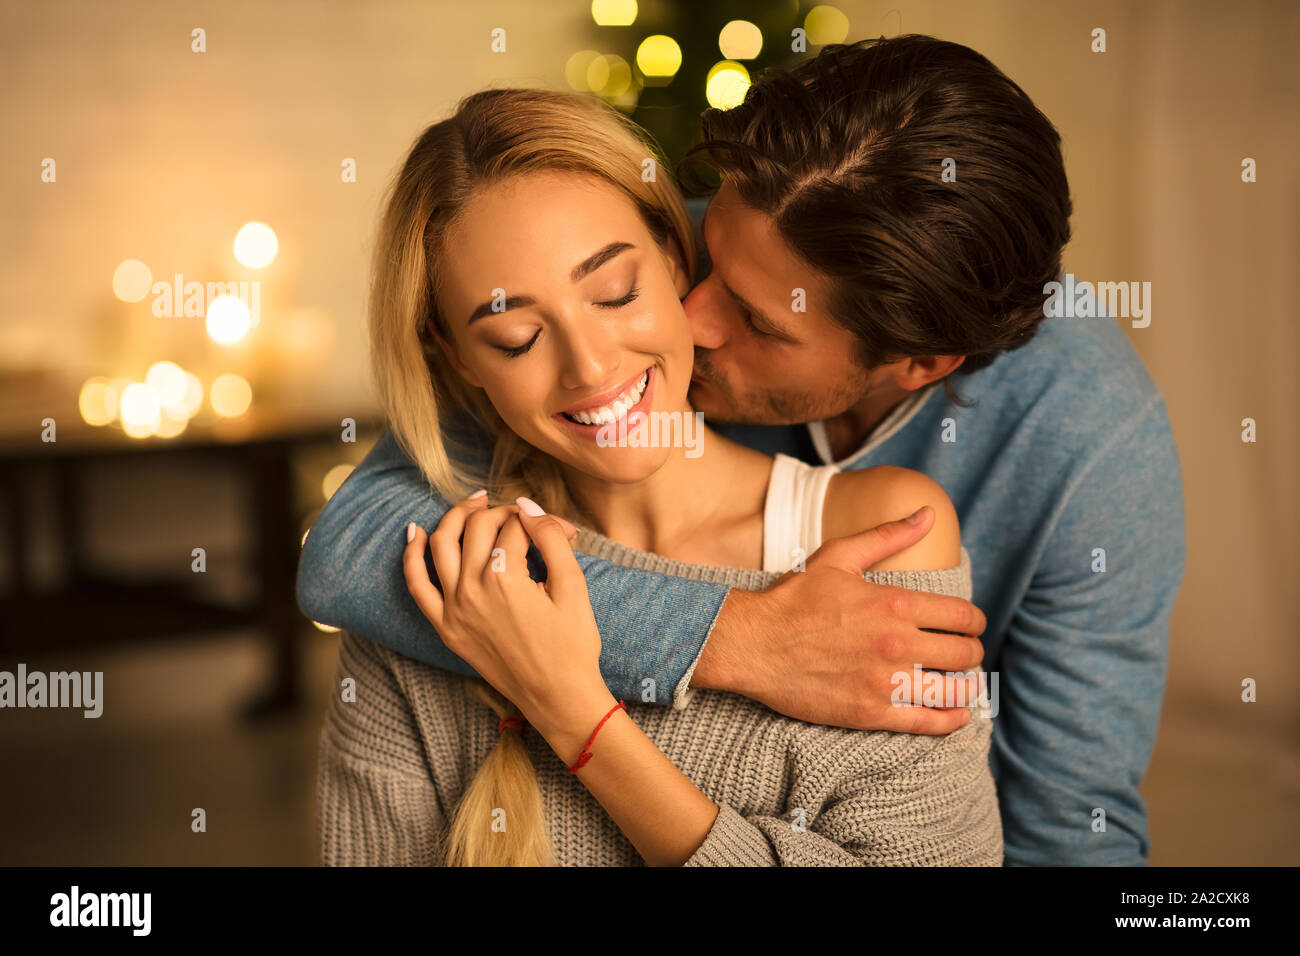 Bewegender Moment. Mann küssen Frau vor Weihnachtsbaum Stockfoto